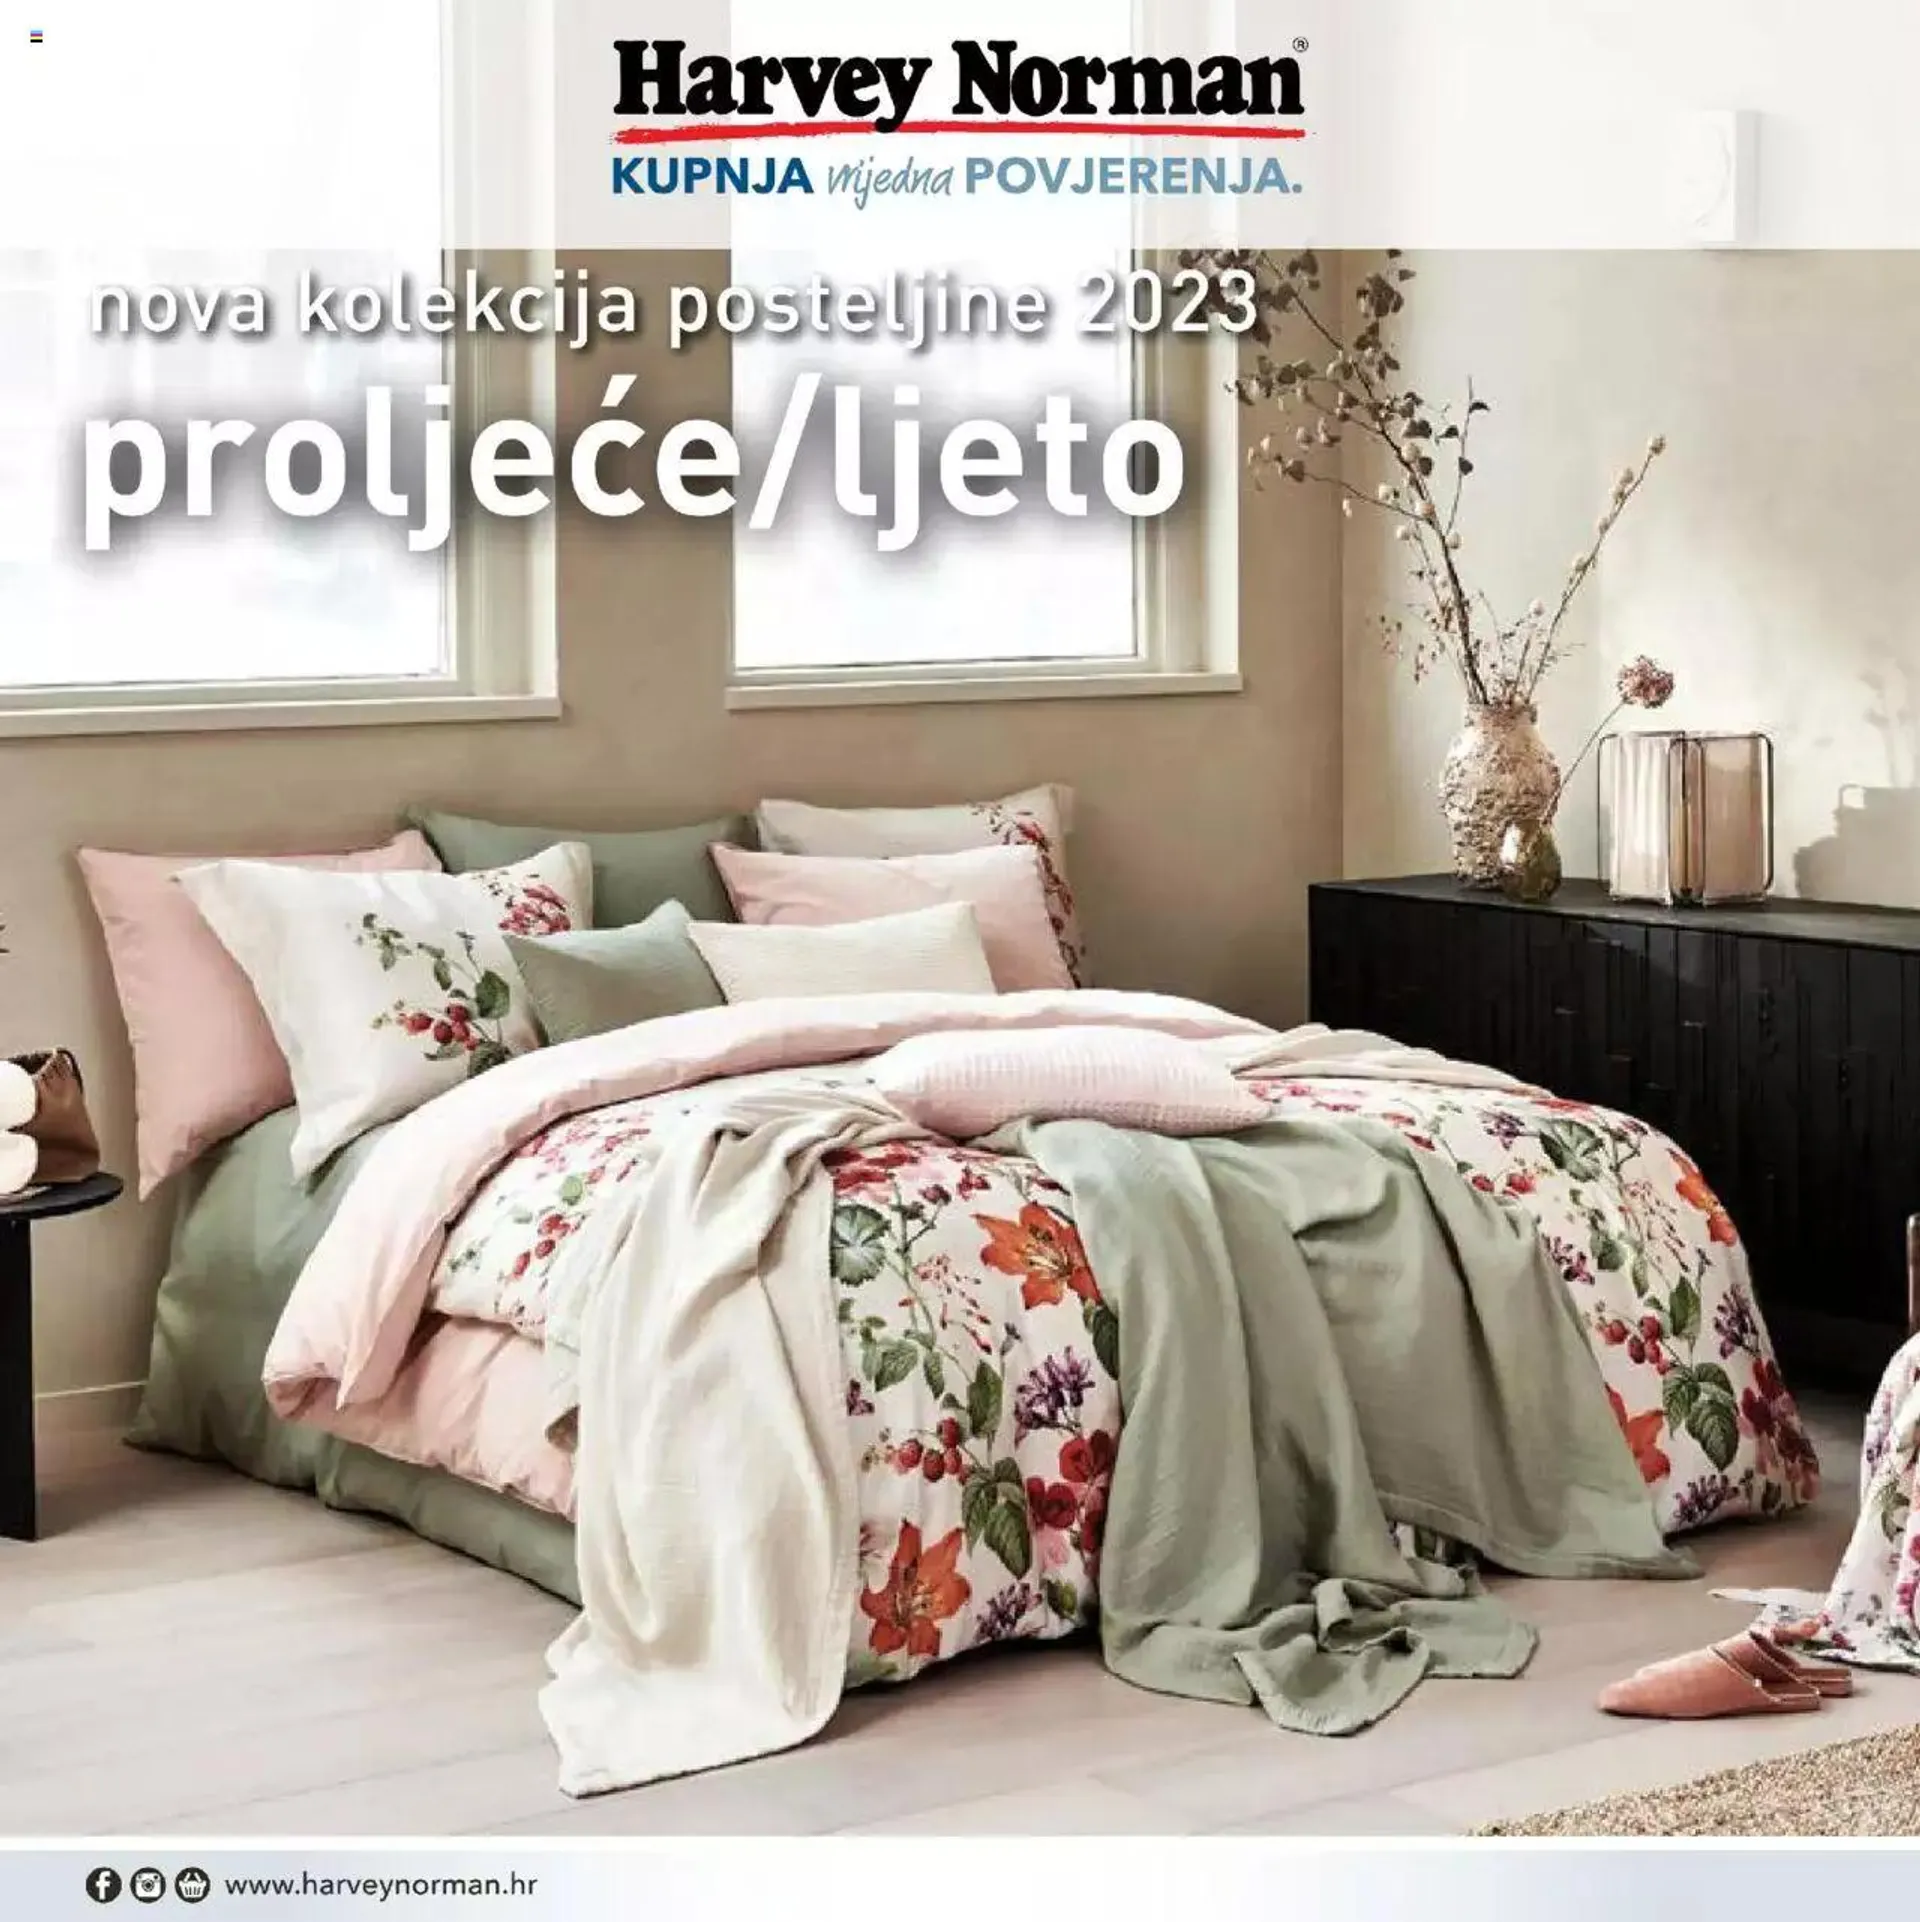 Nova kolekcija posteljine 2023 Harvey Norman - 0